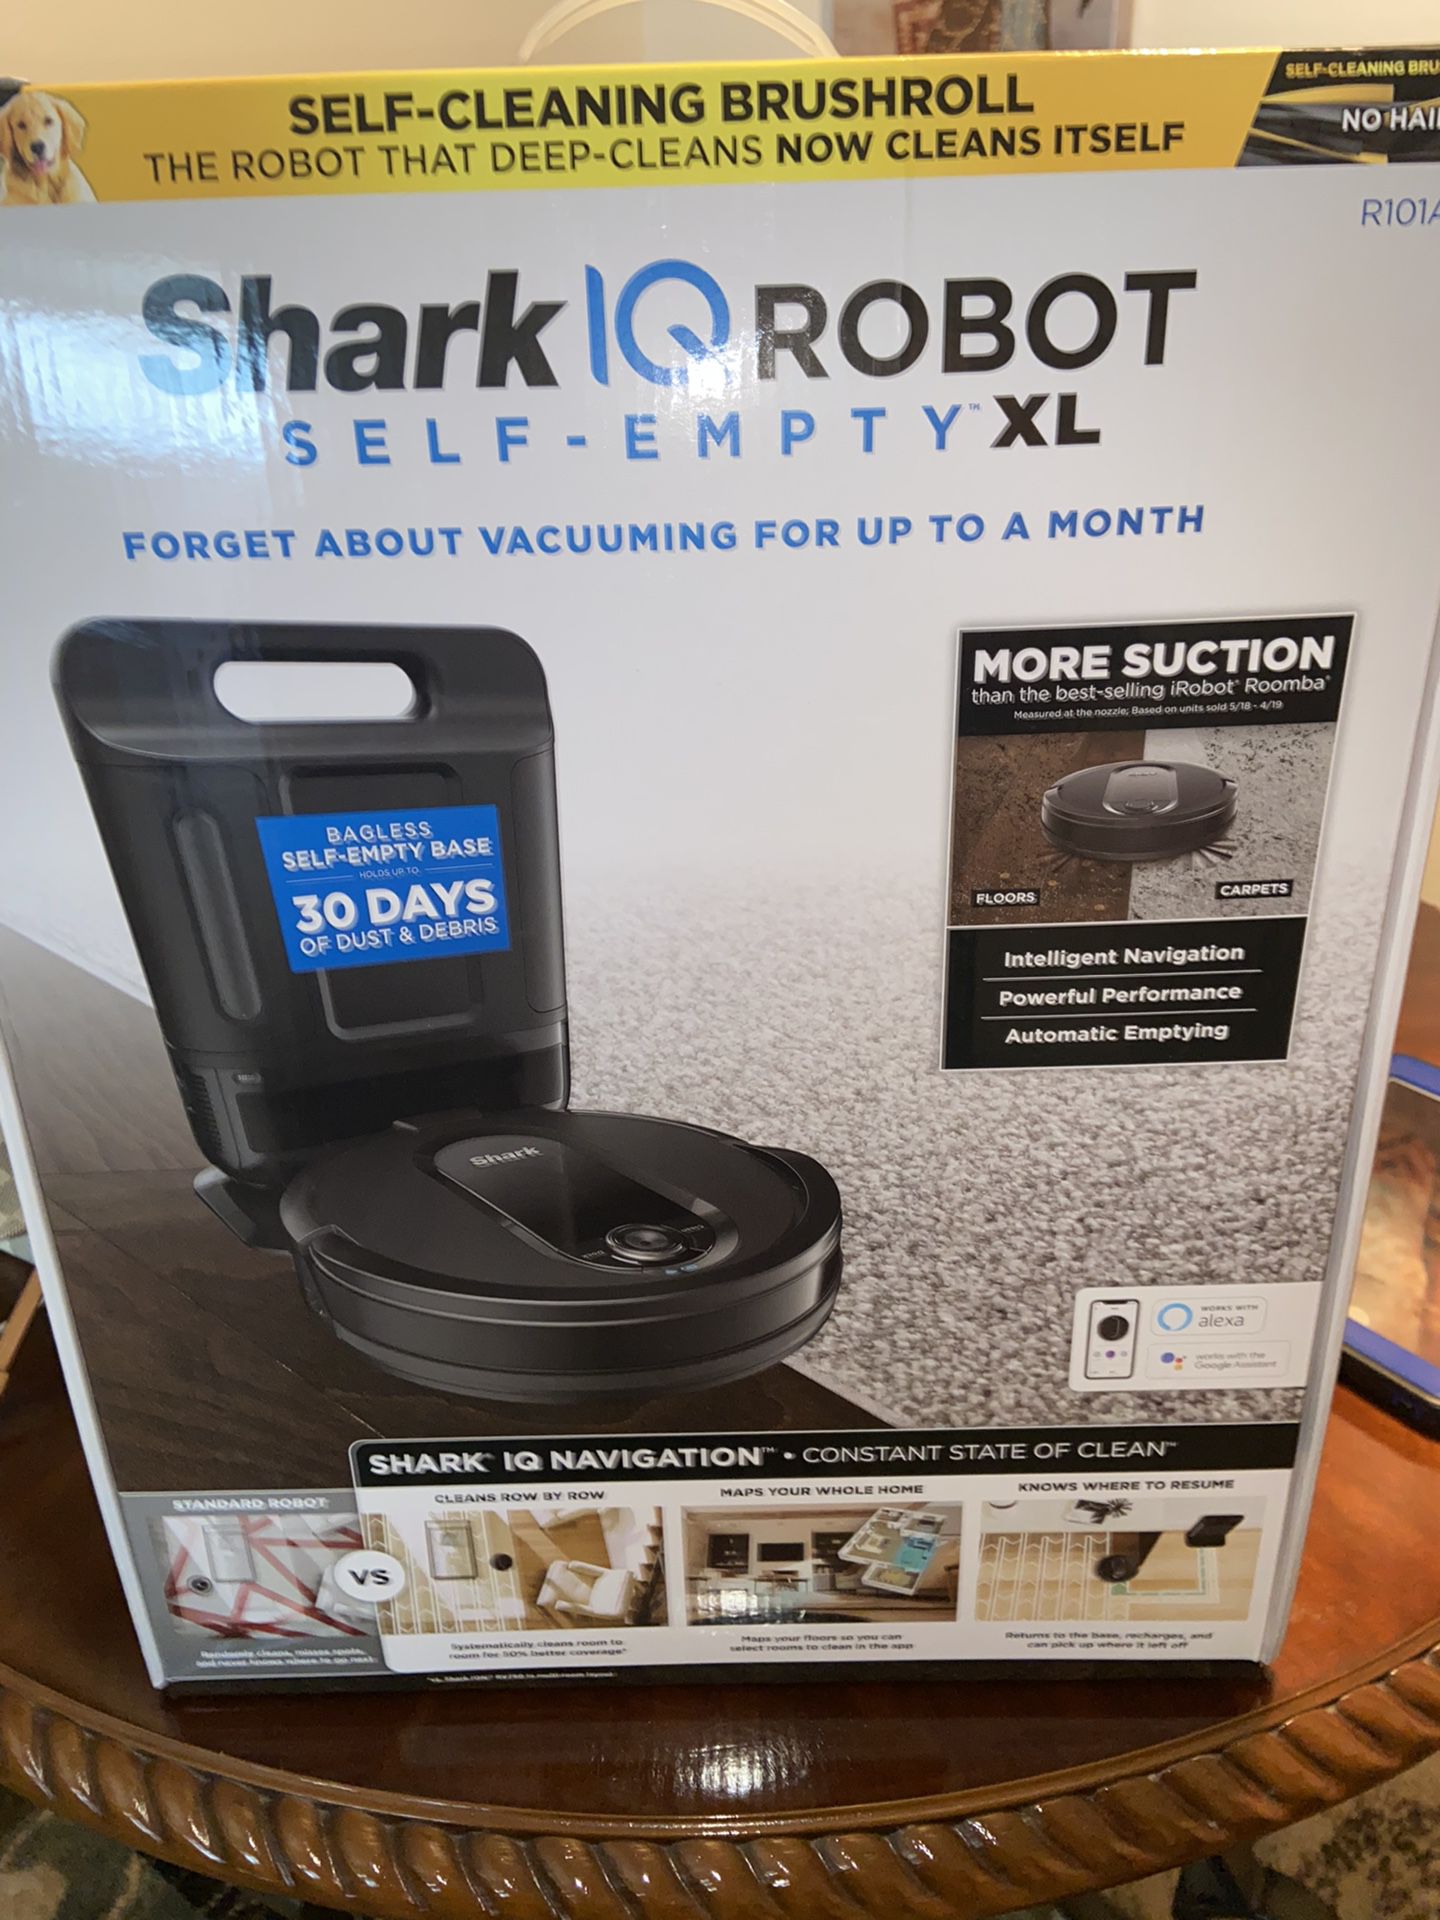 SharkIQ Robot